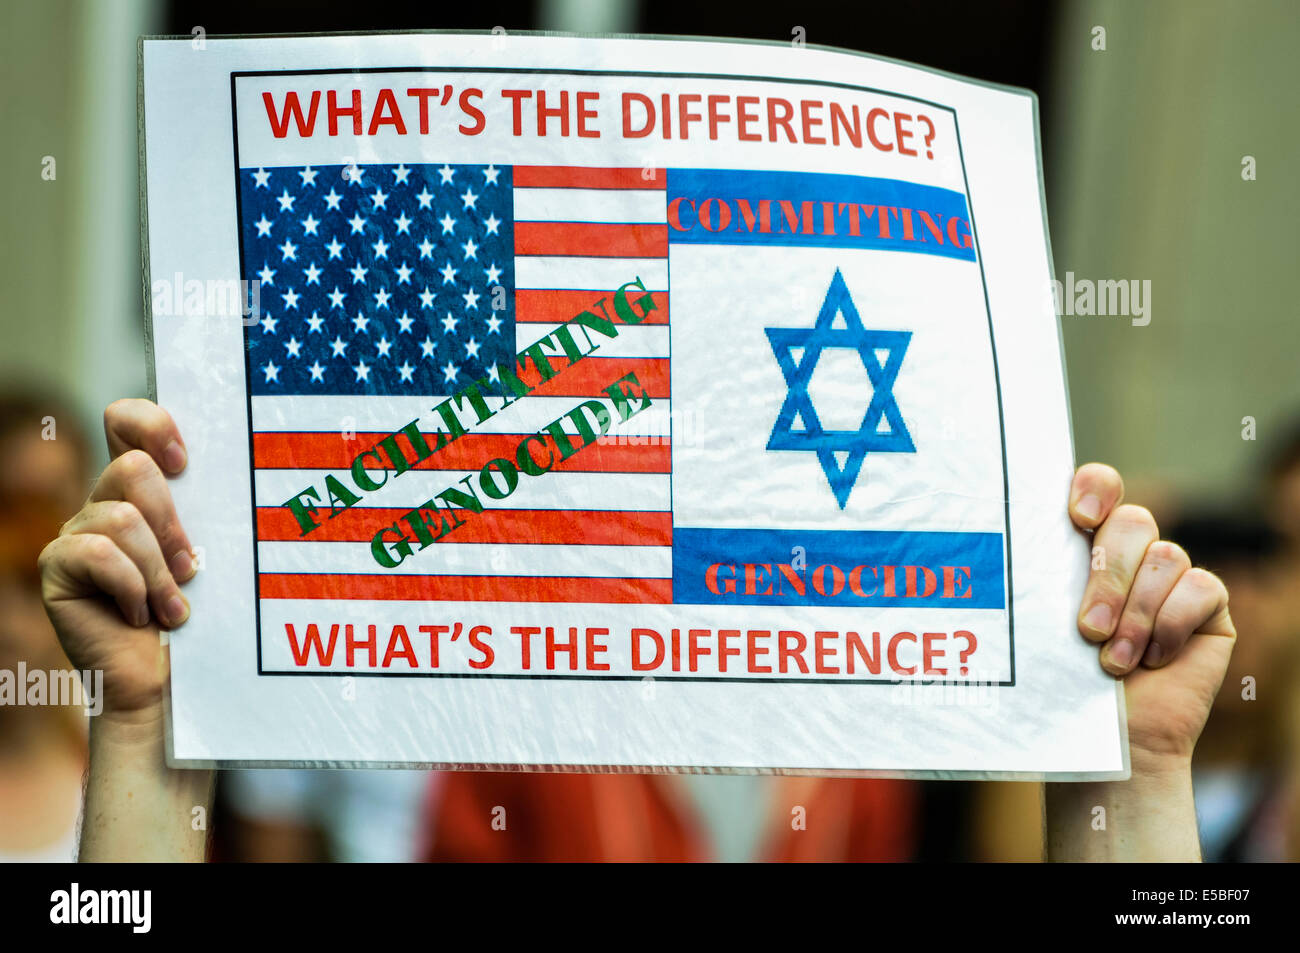 Belfast, Irlanda del Norte. 26 Jul 2014 - Un manifestante sostiene un cartel que dice "Cuál es la diferencia? [Estados Unidos] Facilitar el genocidio. [Israel] cometiendo genocidio' en una mirada pro/anti-israelíes protestan el crédito: Stephen Barnes/Alamy Live News Foto de stock